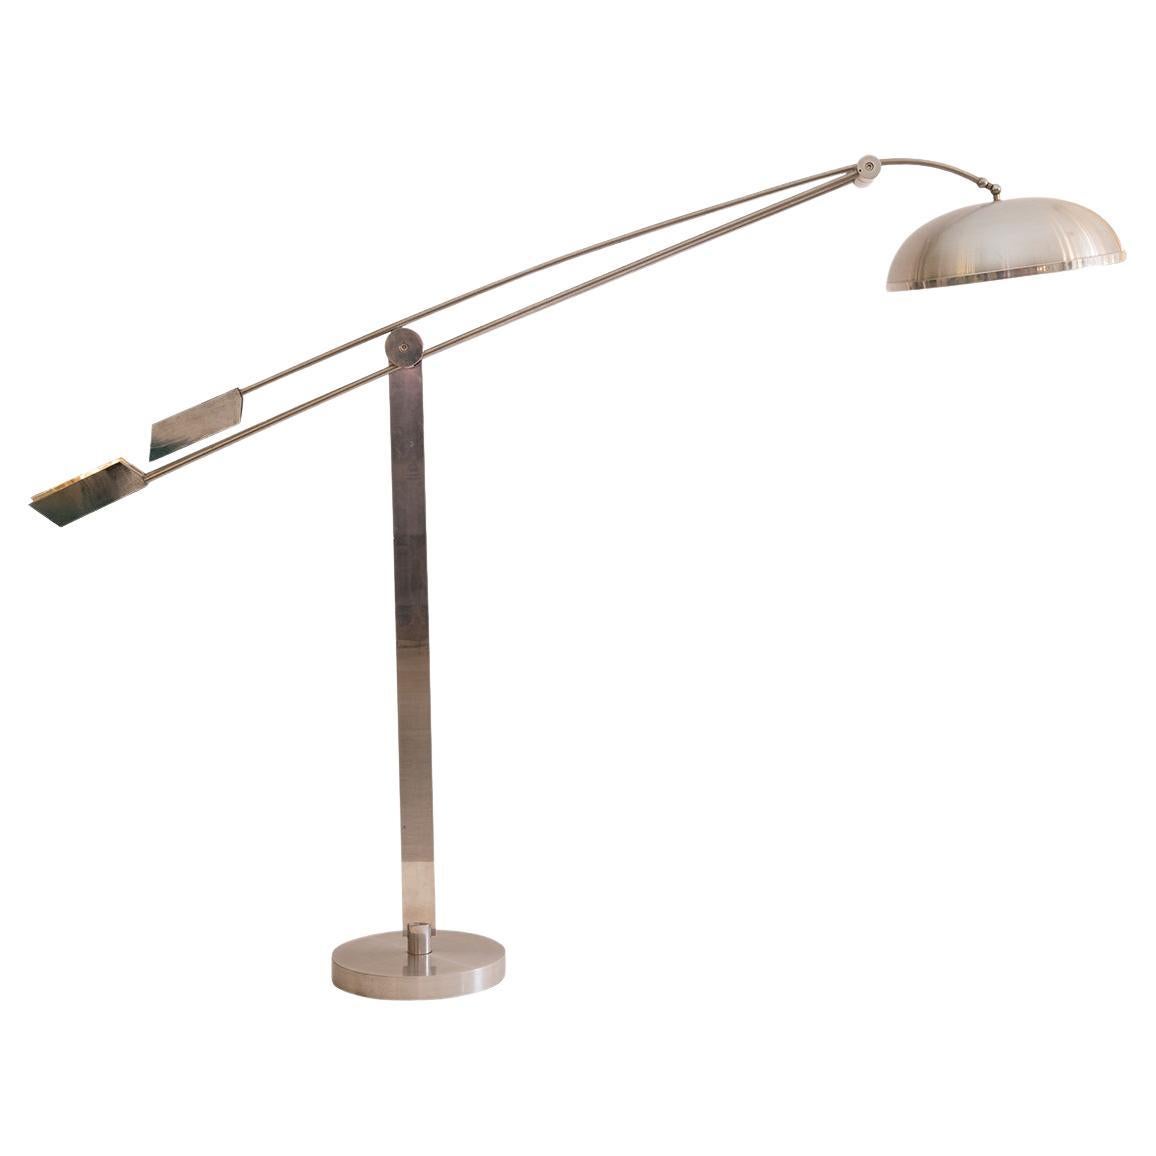 Original Art Deco Bauhaus Swiveling Aluminium Floor Lamp of the Period For Sale